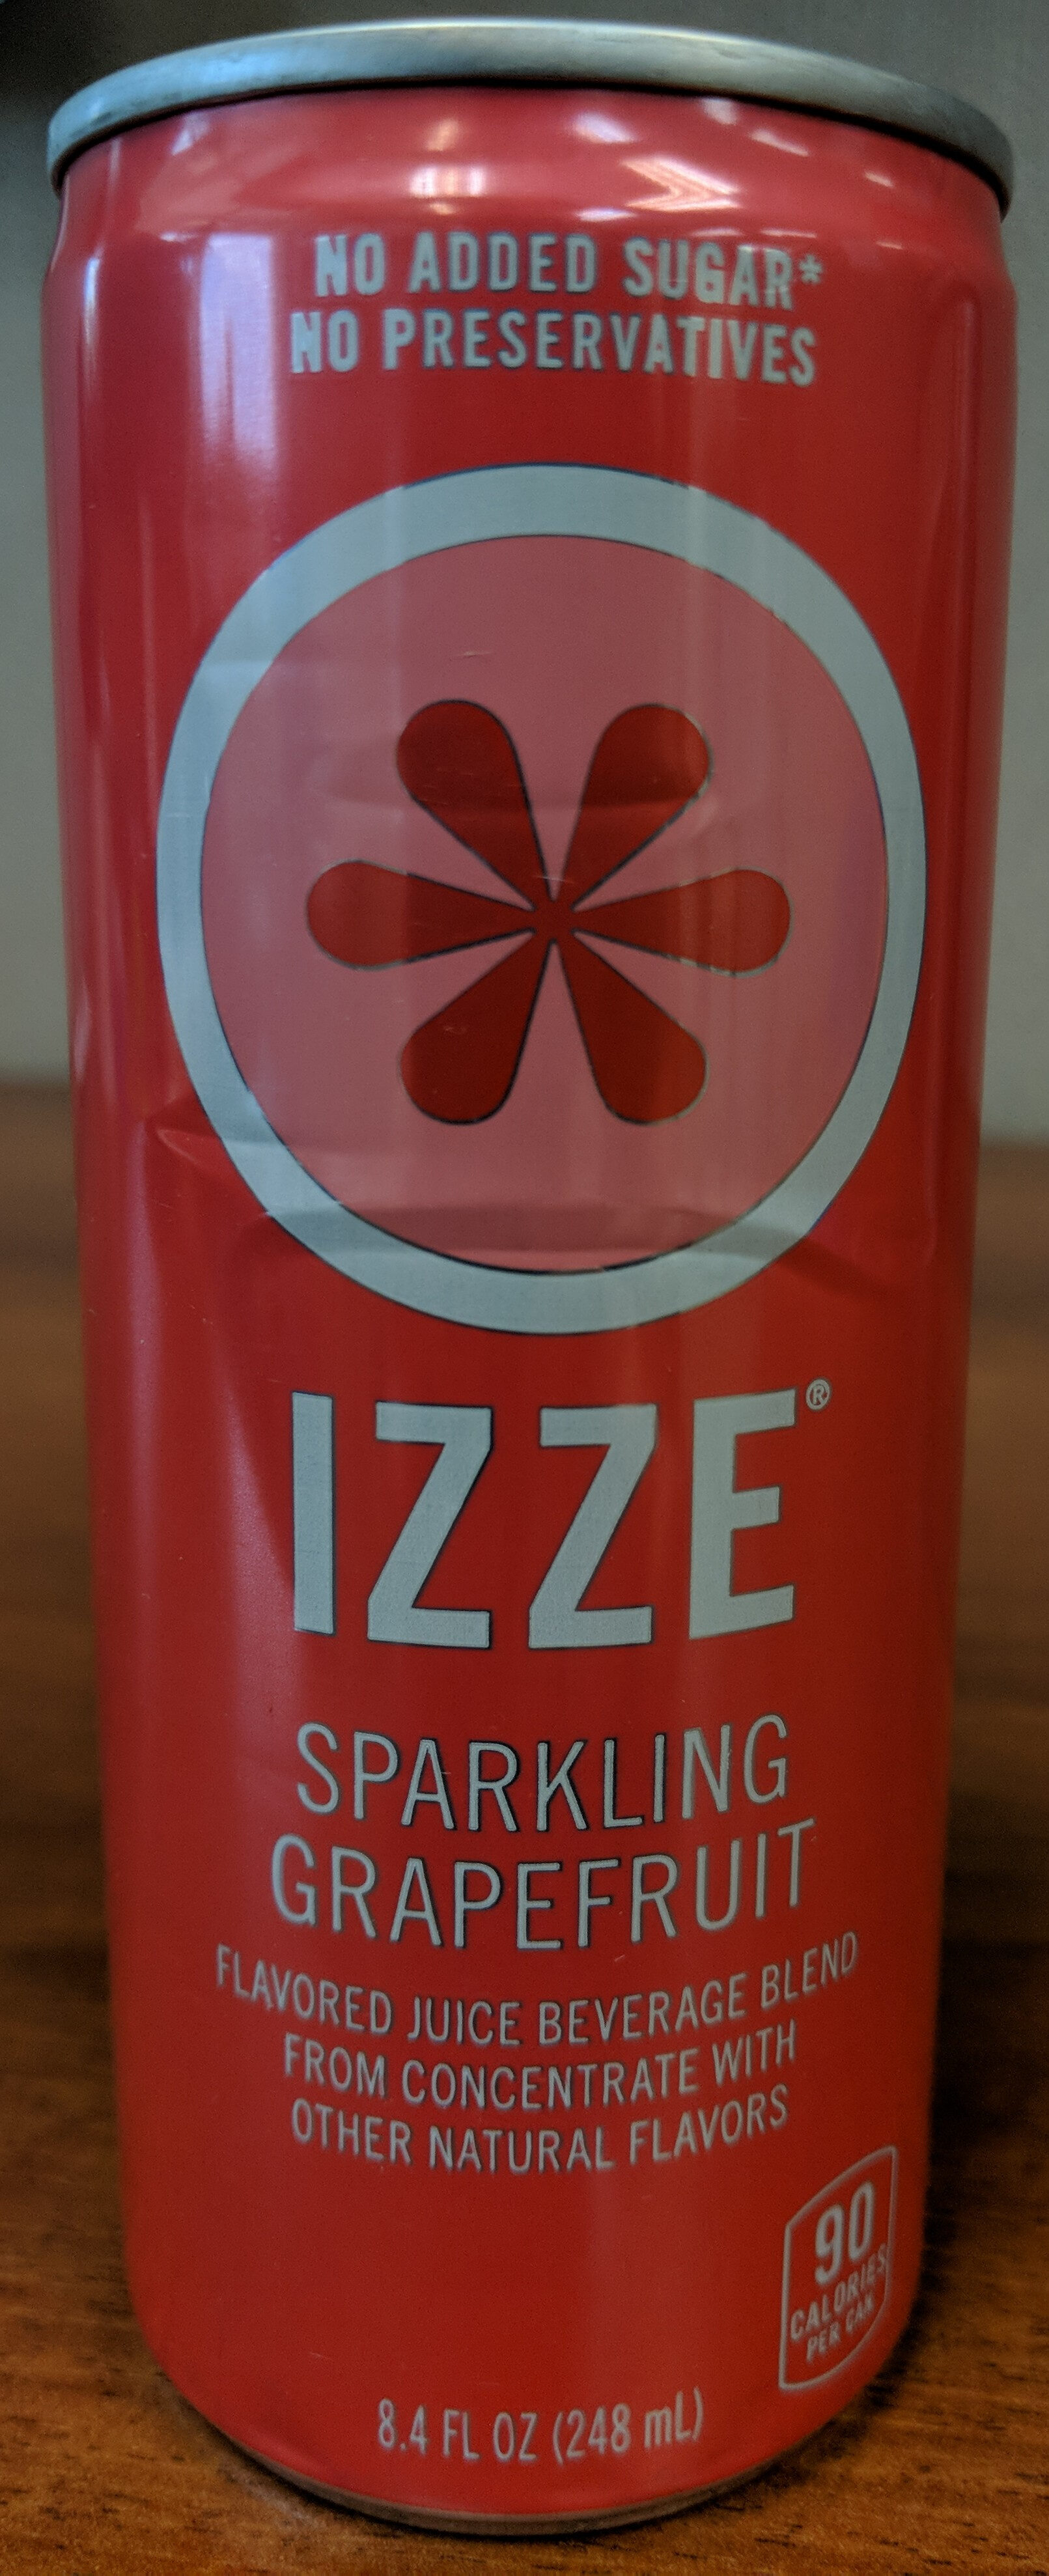 Sparkling grapefruit flavored juice beverage blend from concentrate, grapefruit - Producto - en